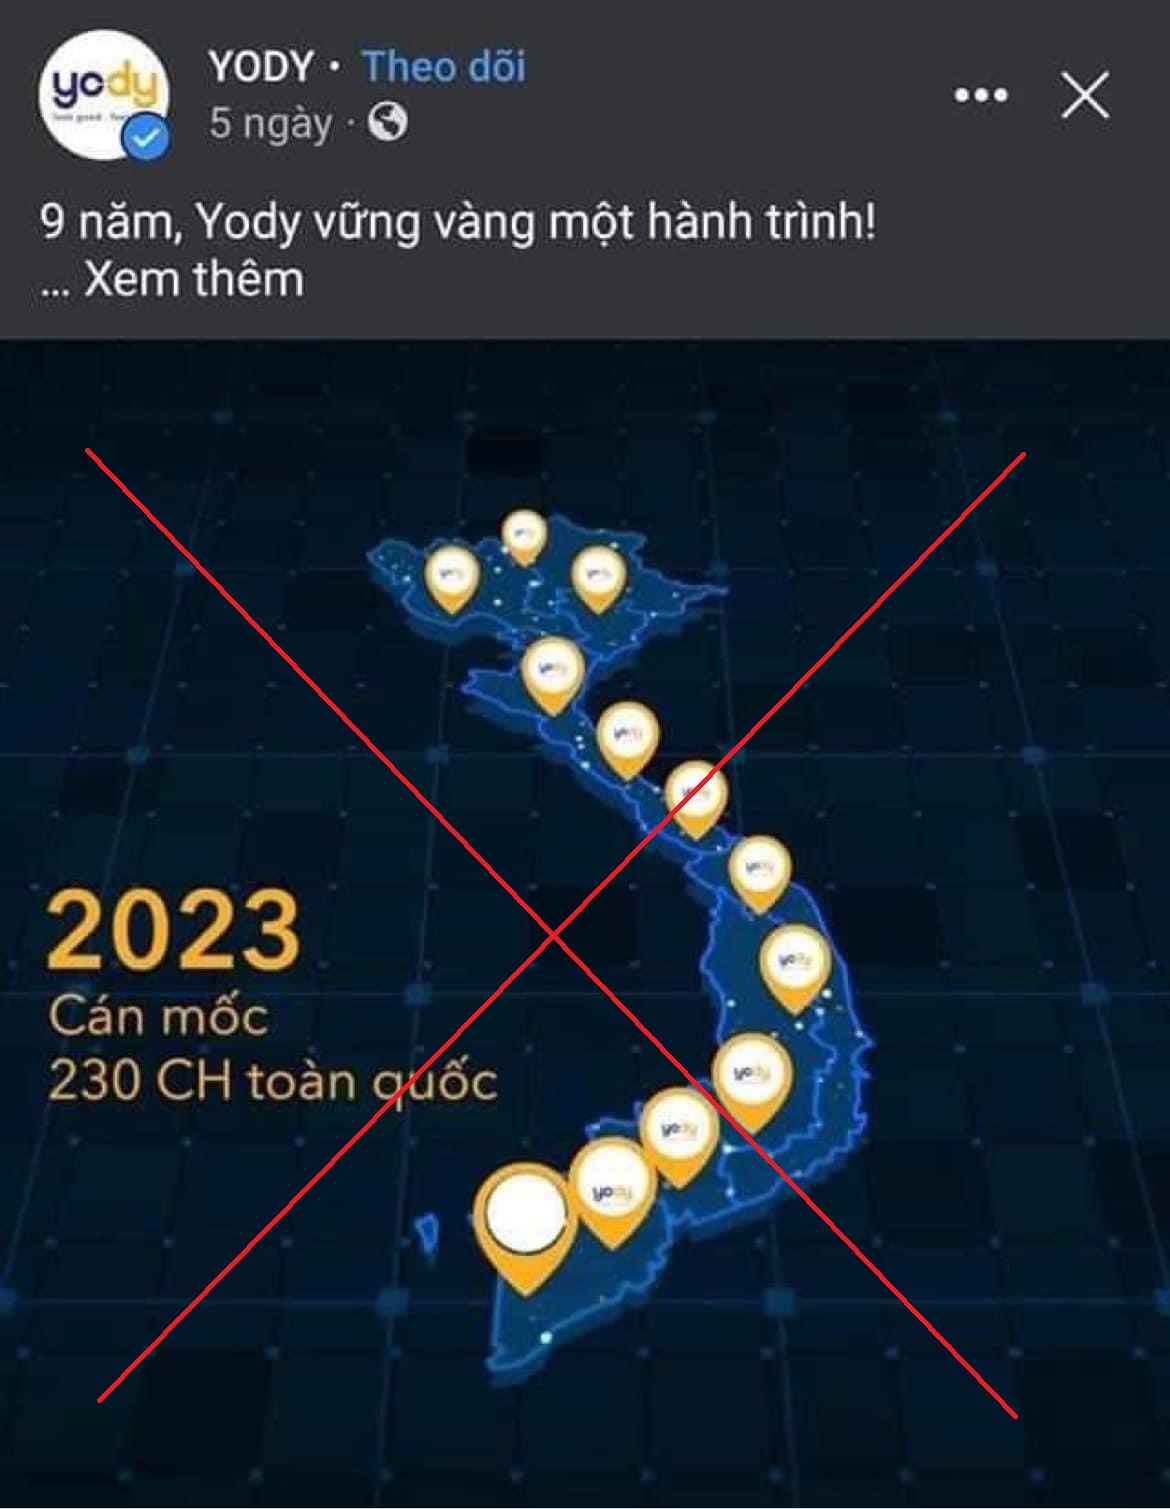 Yody bị xử phạt 15 triệu đồng vì đăng bản đồ thiếu Hoàng Sa, Trường Sa lên 53 tài khoản fanpage Facebook - Ảnh 2.